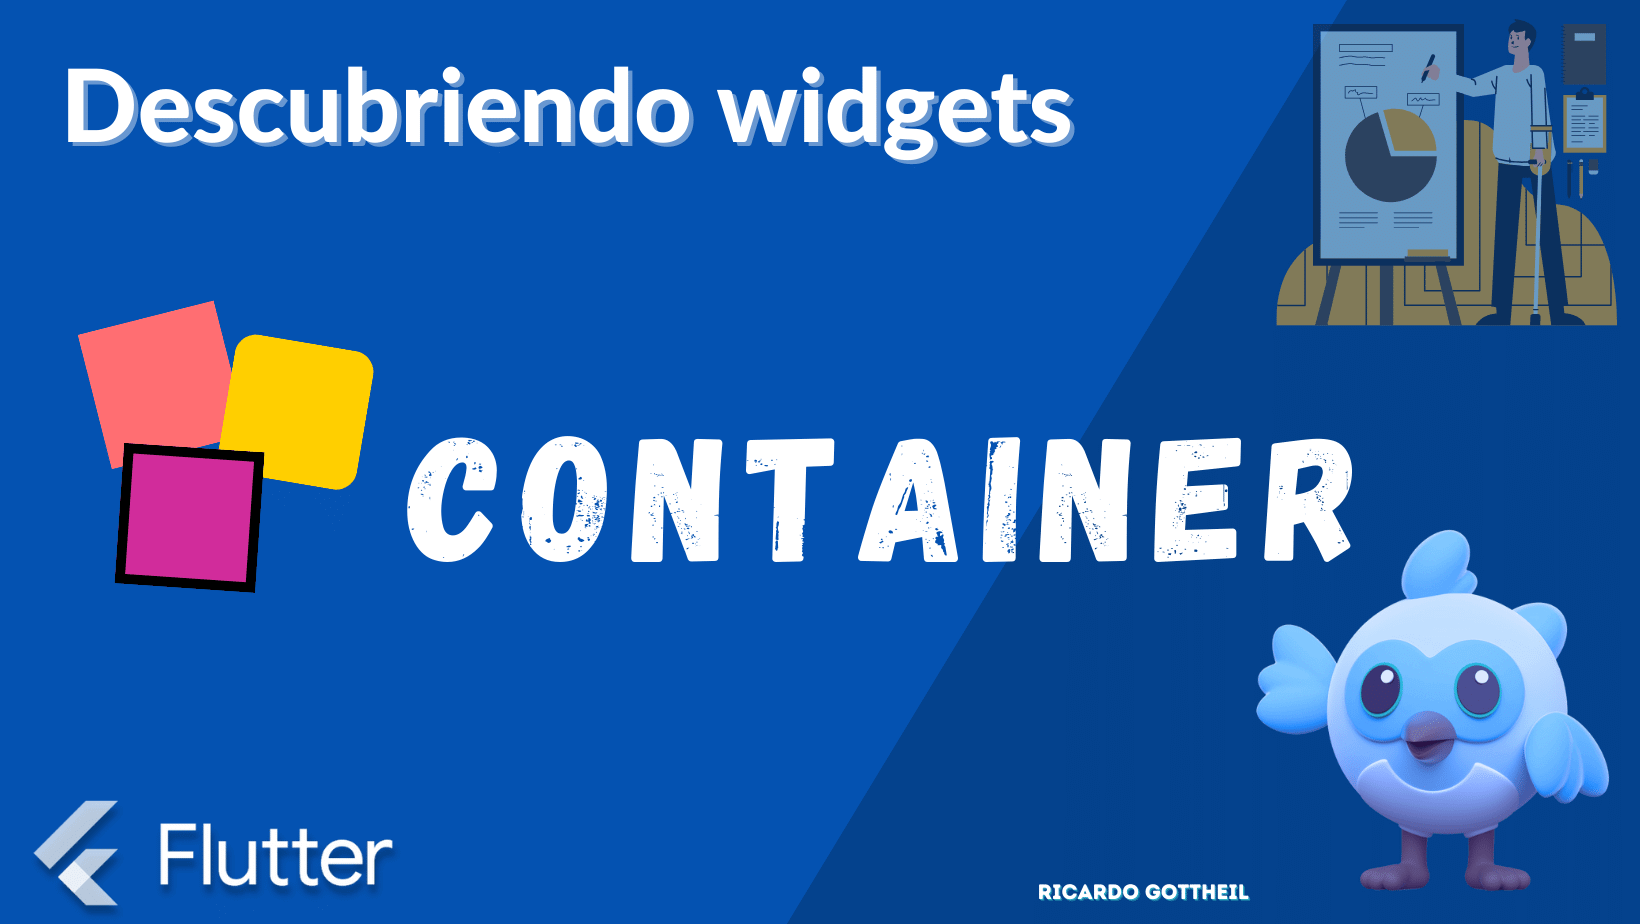 Portada de la entrada de descubriendo widgets - Container